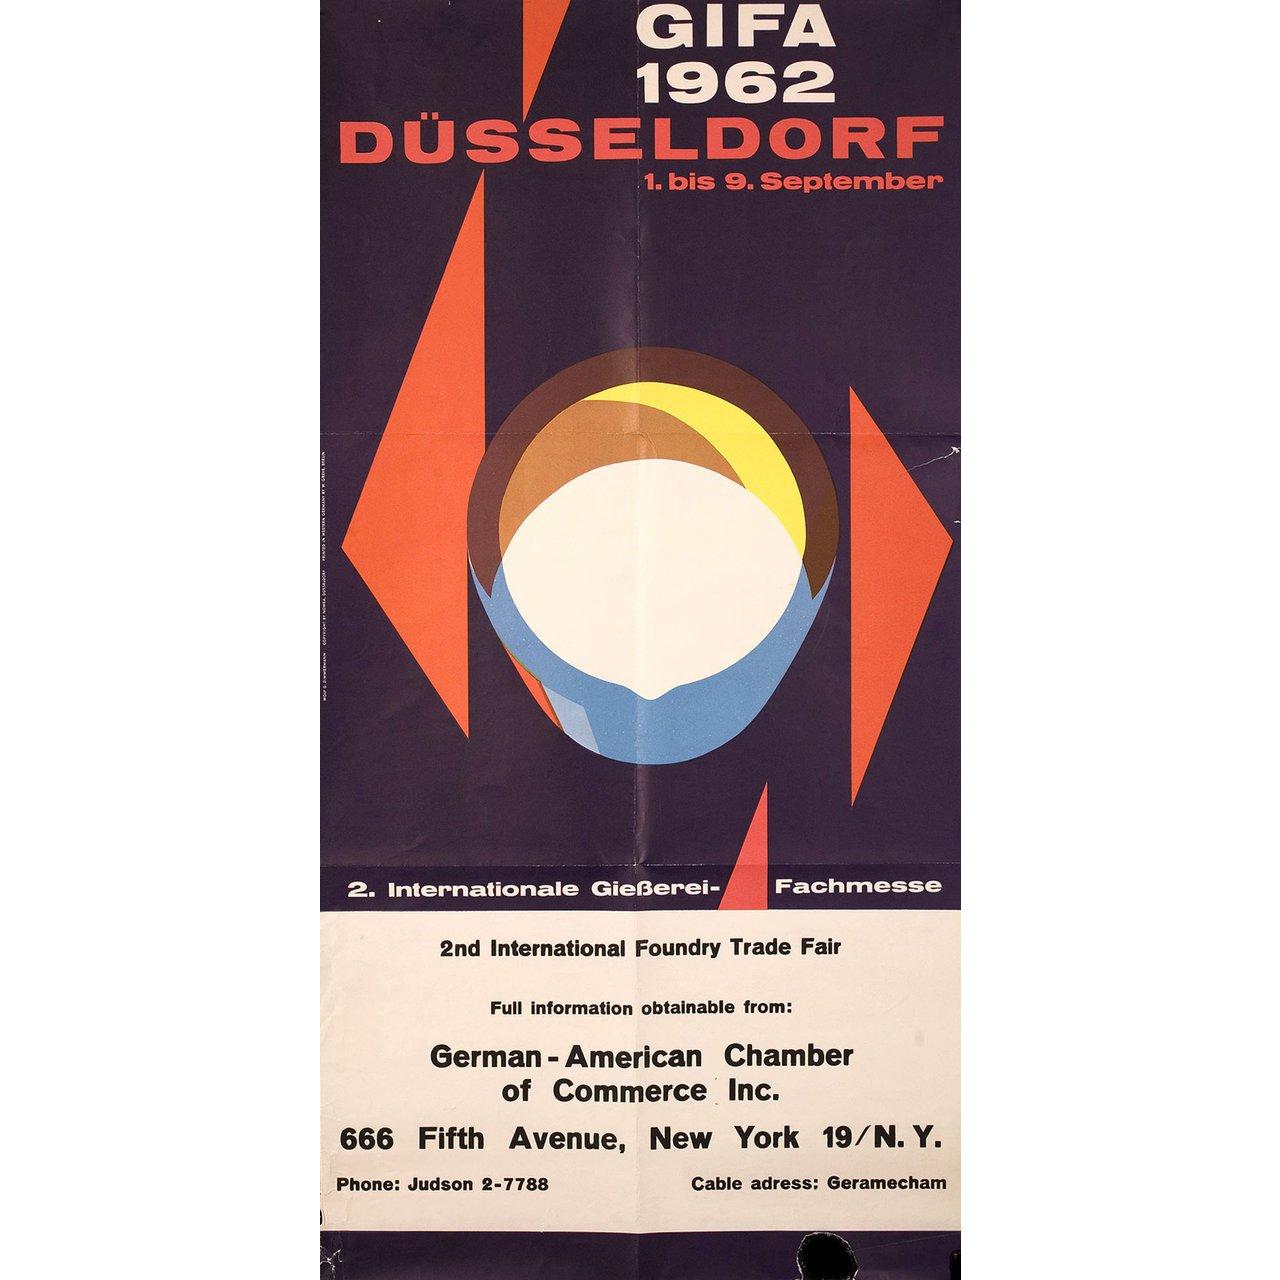 Affiche originale allemande de 1962 réalisée par Wolf Zimmerman pour la GIFA de Düsseldorf, (1962). Très bon état, plié. De nombreuses affiches originales ont été publiées pliées ou ont été pliées par la suite. Veuillez noter que la taille est